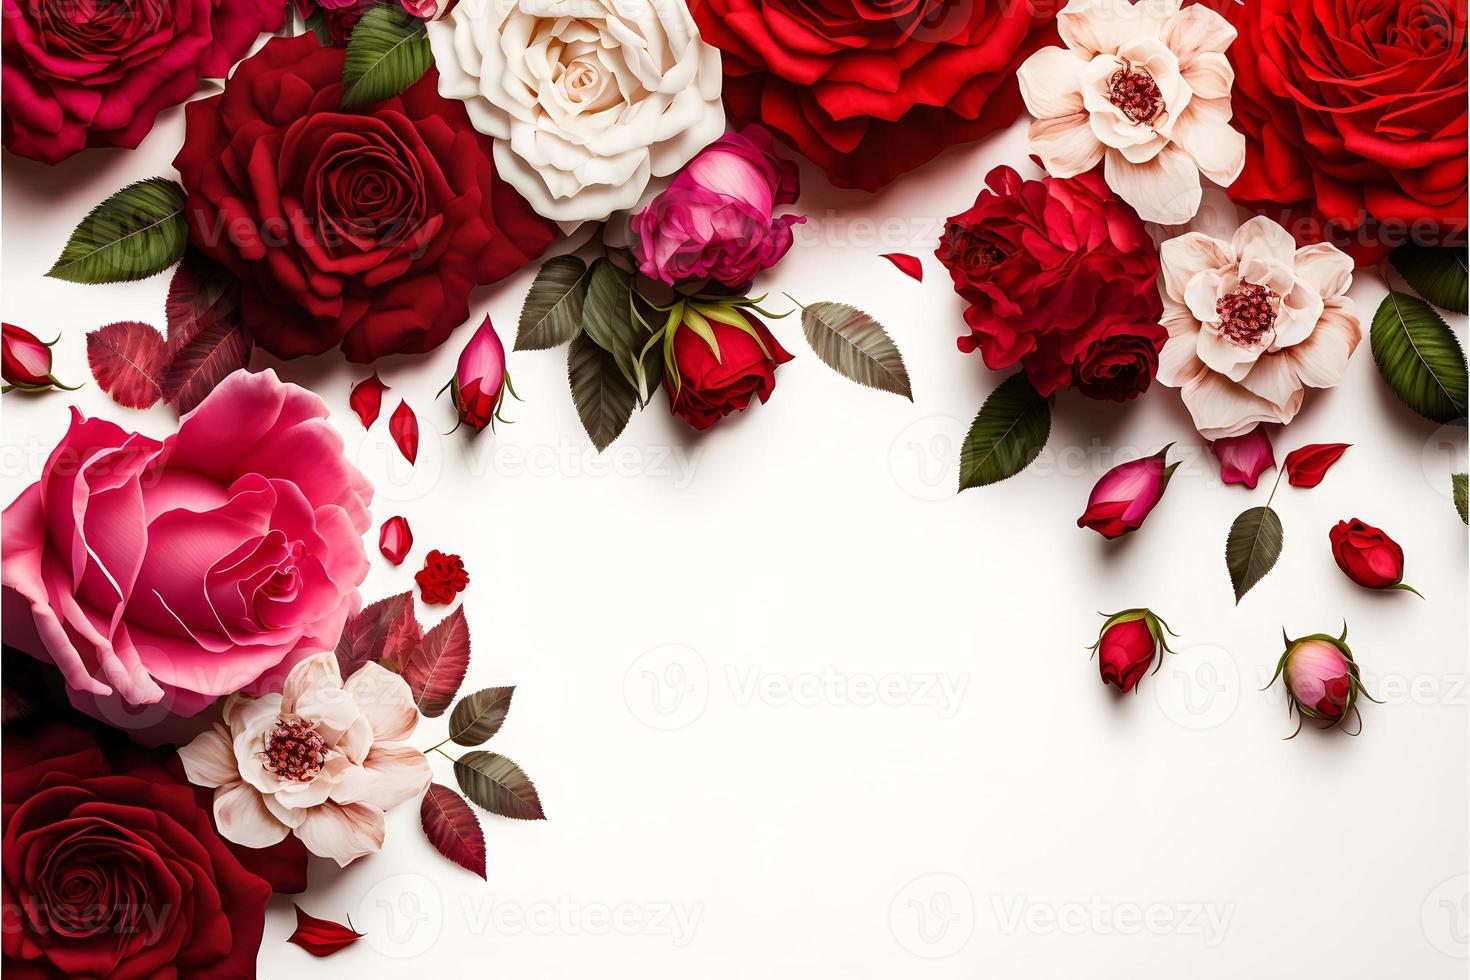 una imagen deslumbrante que presenta una flor rosa roja y rosa con un espacio en blanco en el medio, perfecta para agregar texto o superponer gráficos. esta foto es ideal para usar en redes sociales, sitios web